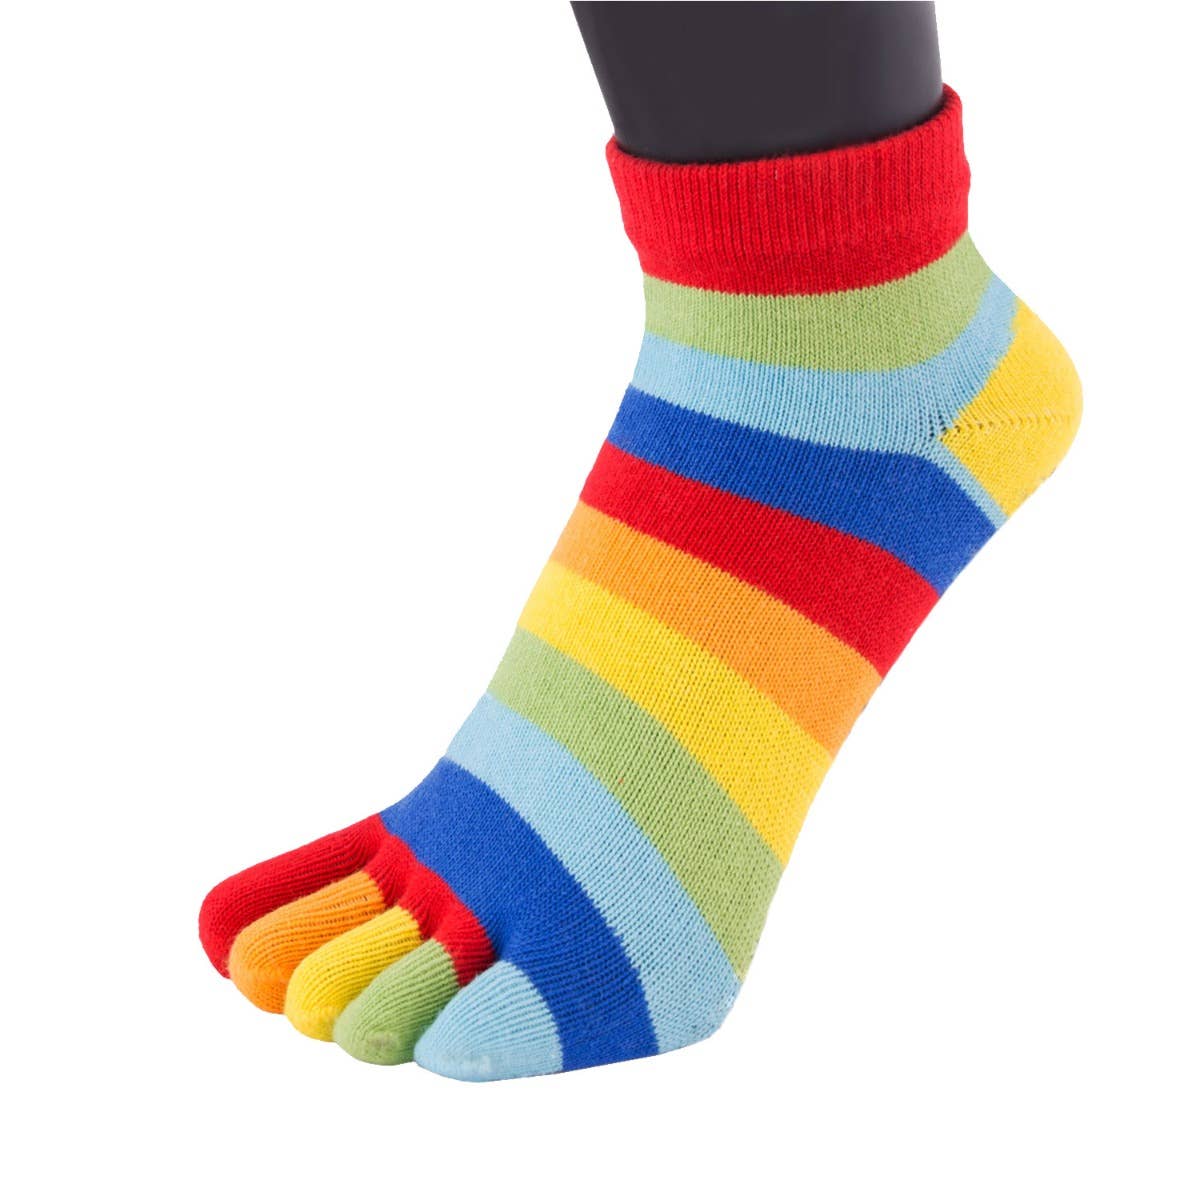 TOETOE - calcetines cortos de dedos - tallas 35-46 / Striped Denim